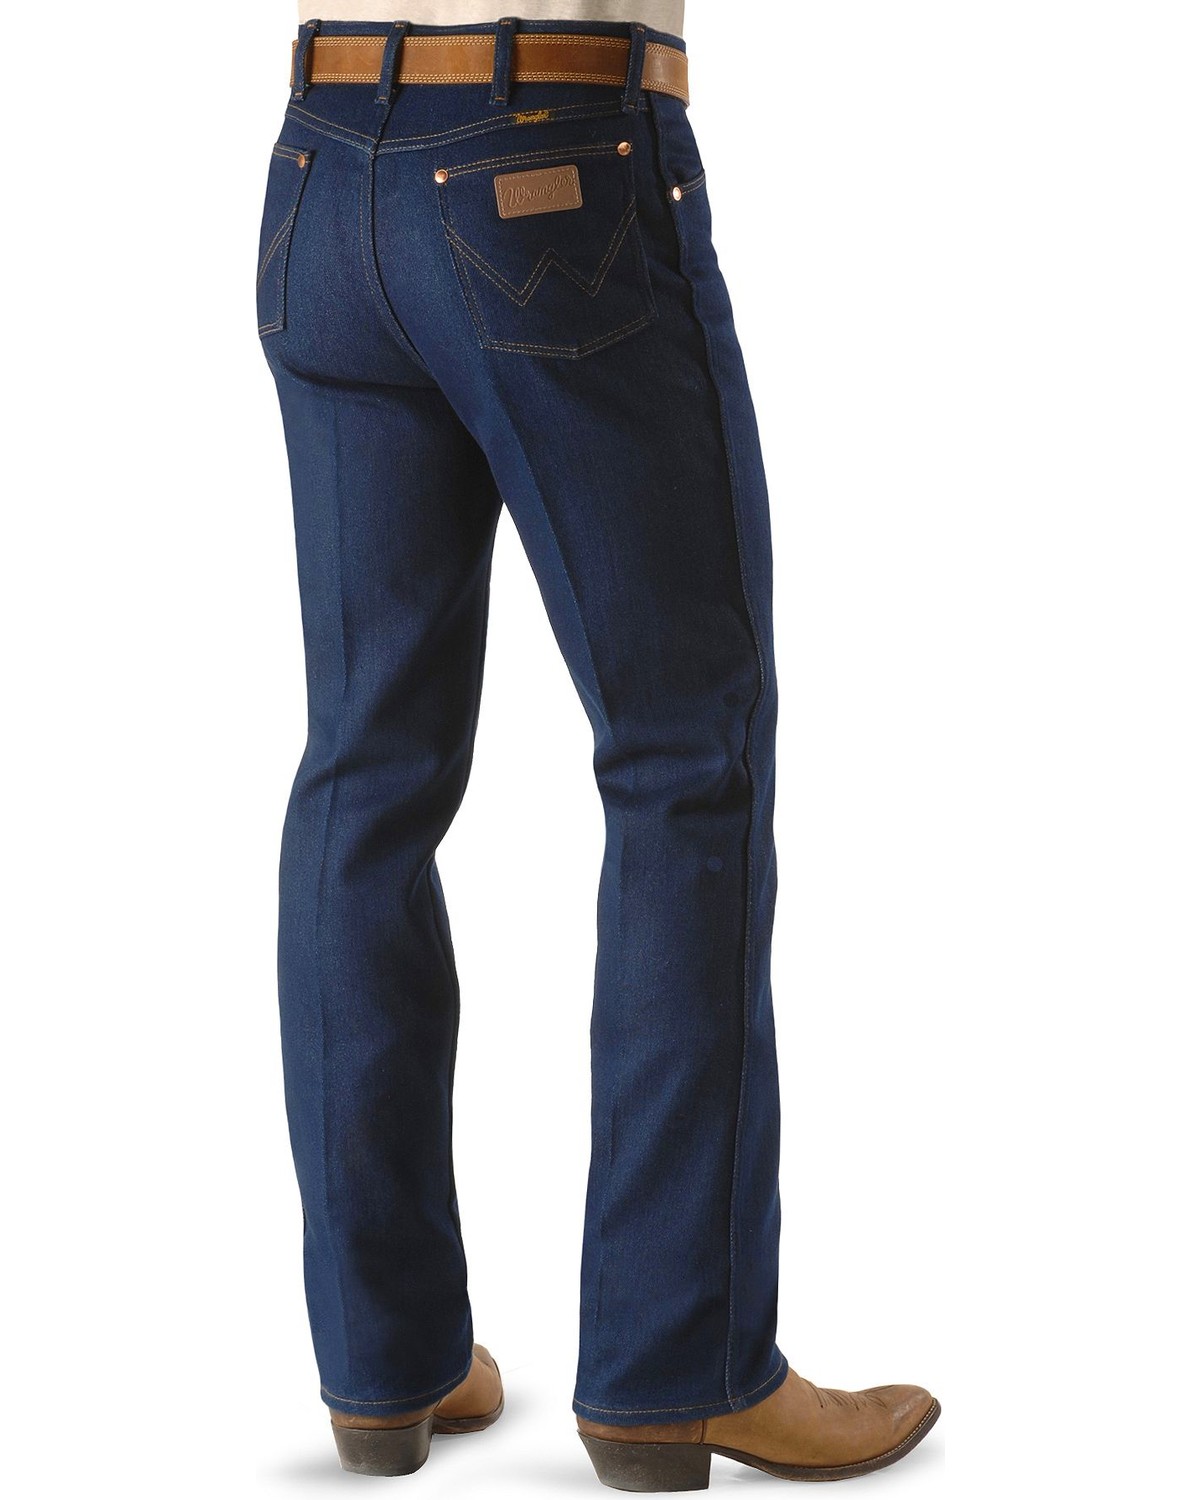 Grosir Distributor Celana Jeans Wrangler 03 Harga Murah Bagus Berkualitas